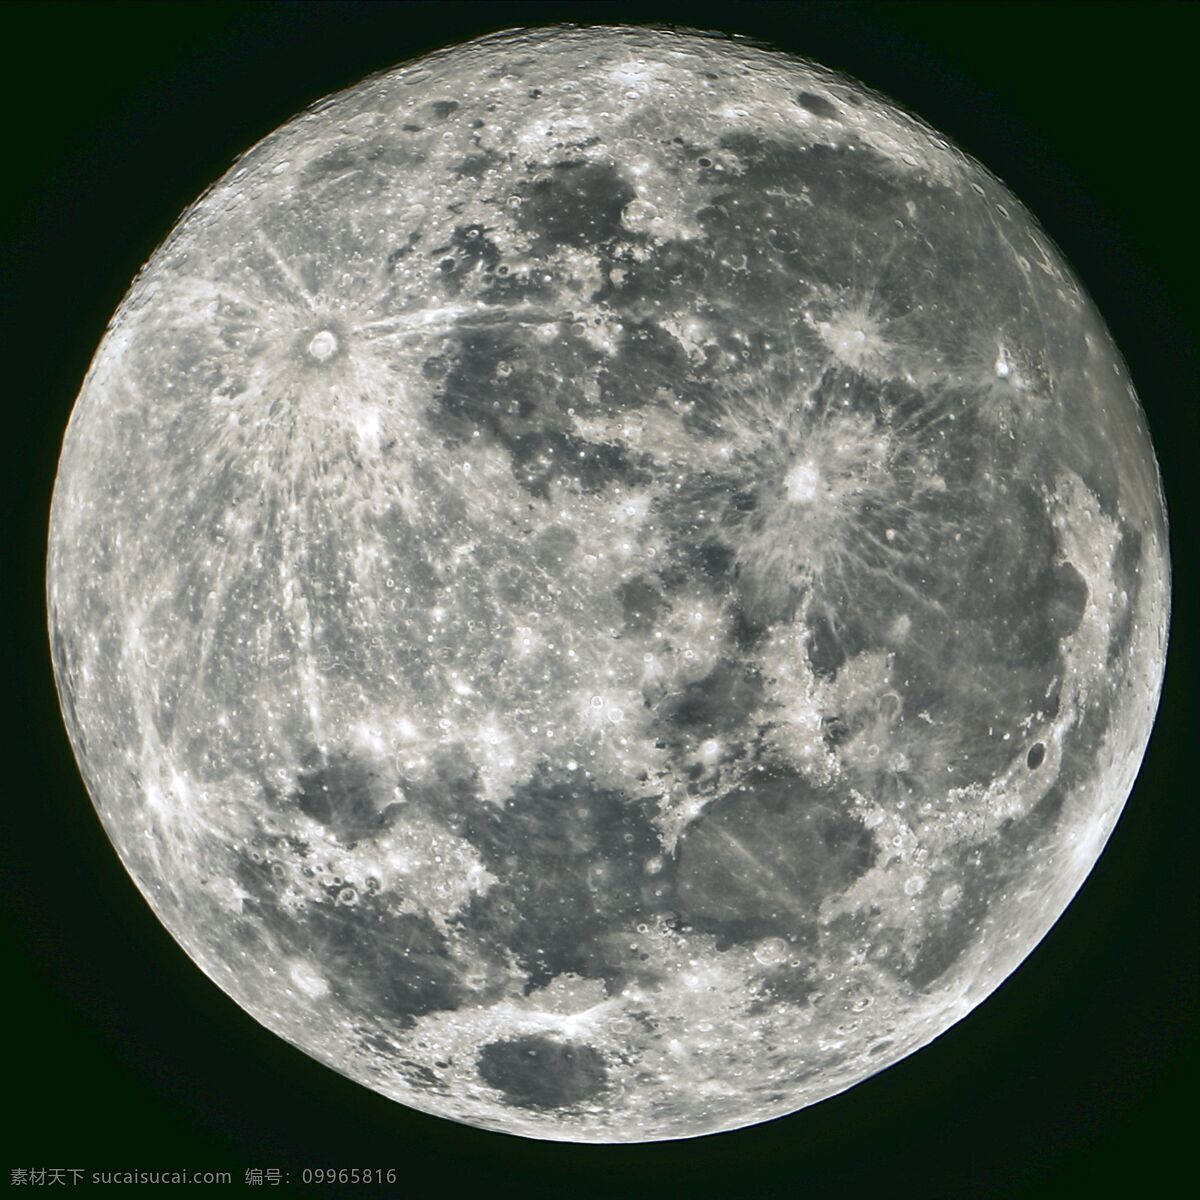 夜空 圆月 月亮 晚上 夜晚 夜色 月球 宇宙太空 环境家居